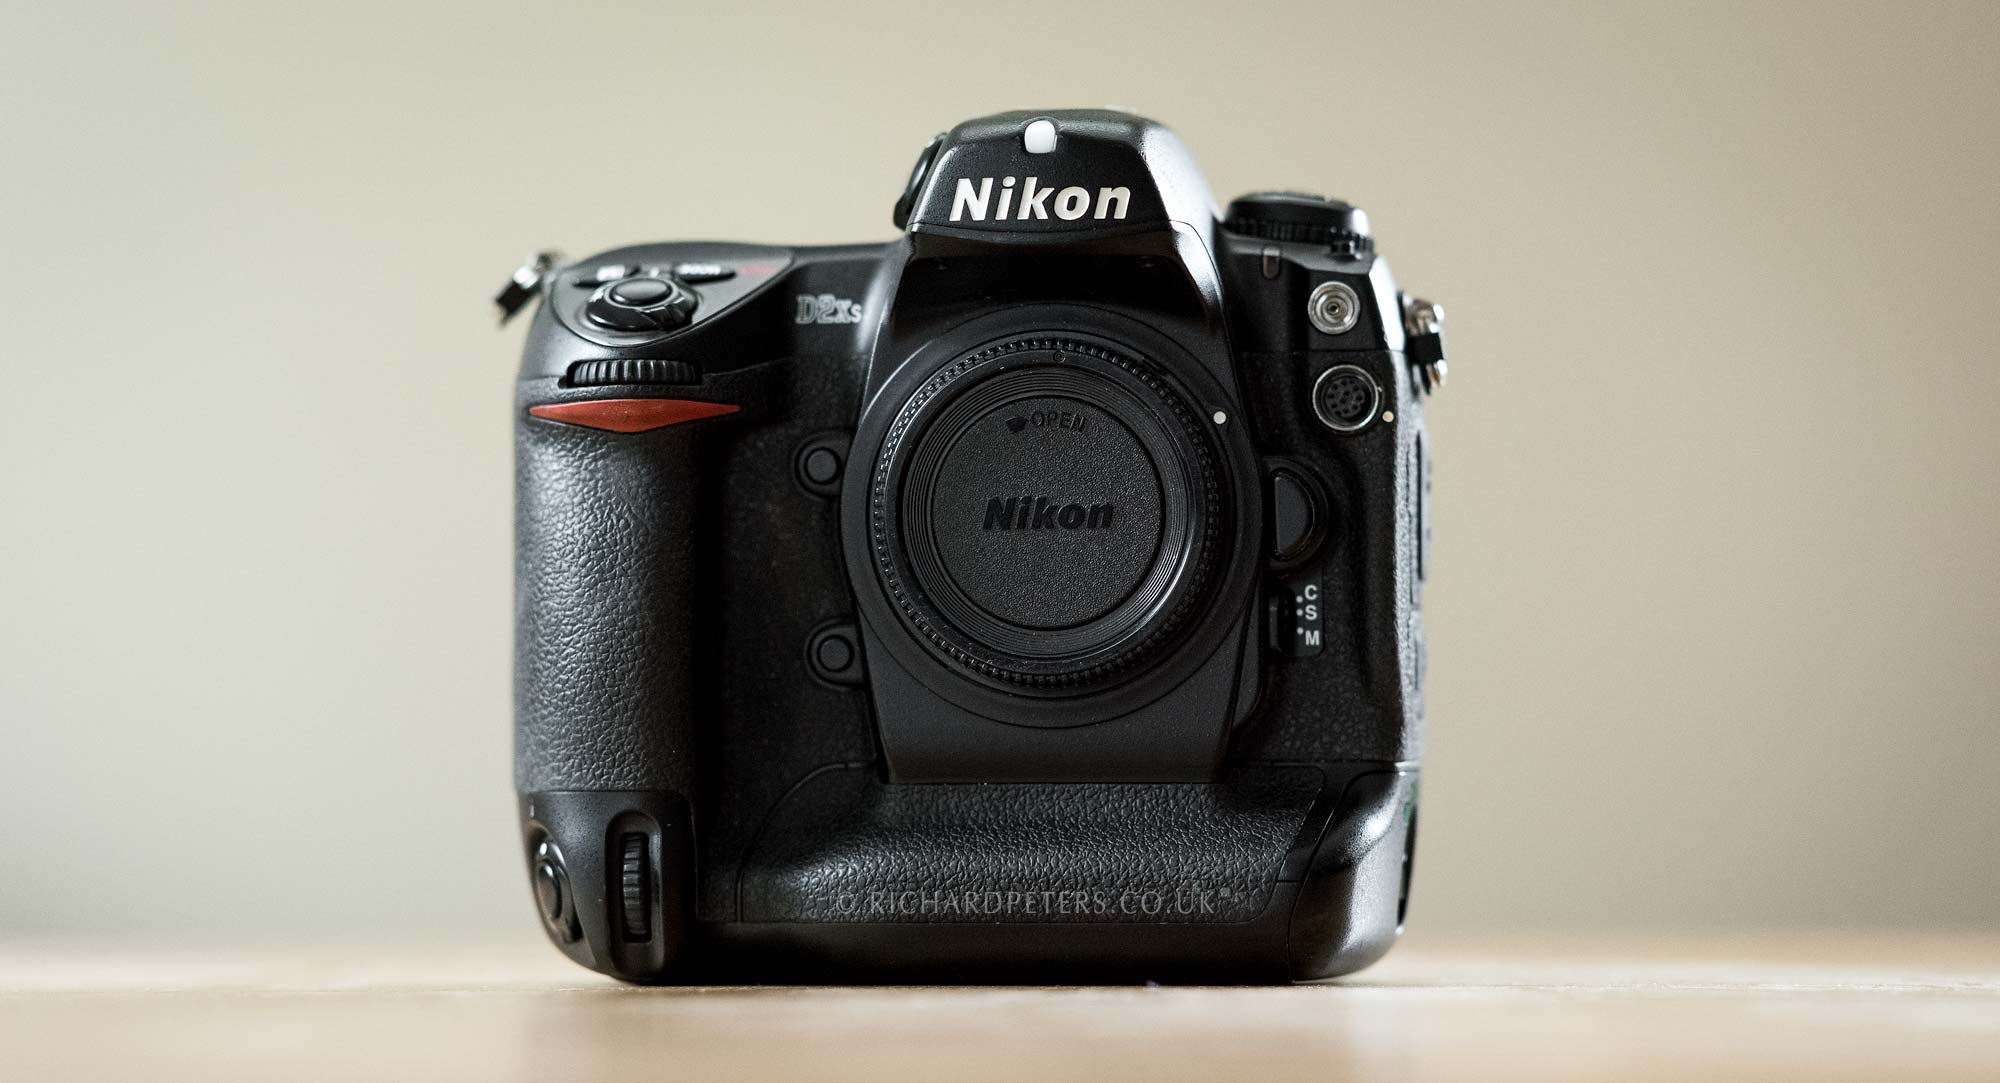 The Nikon D2xs